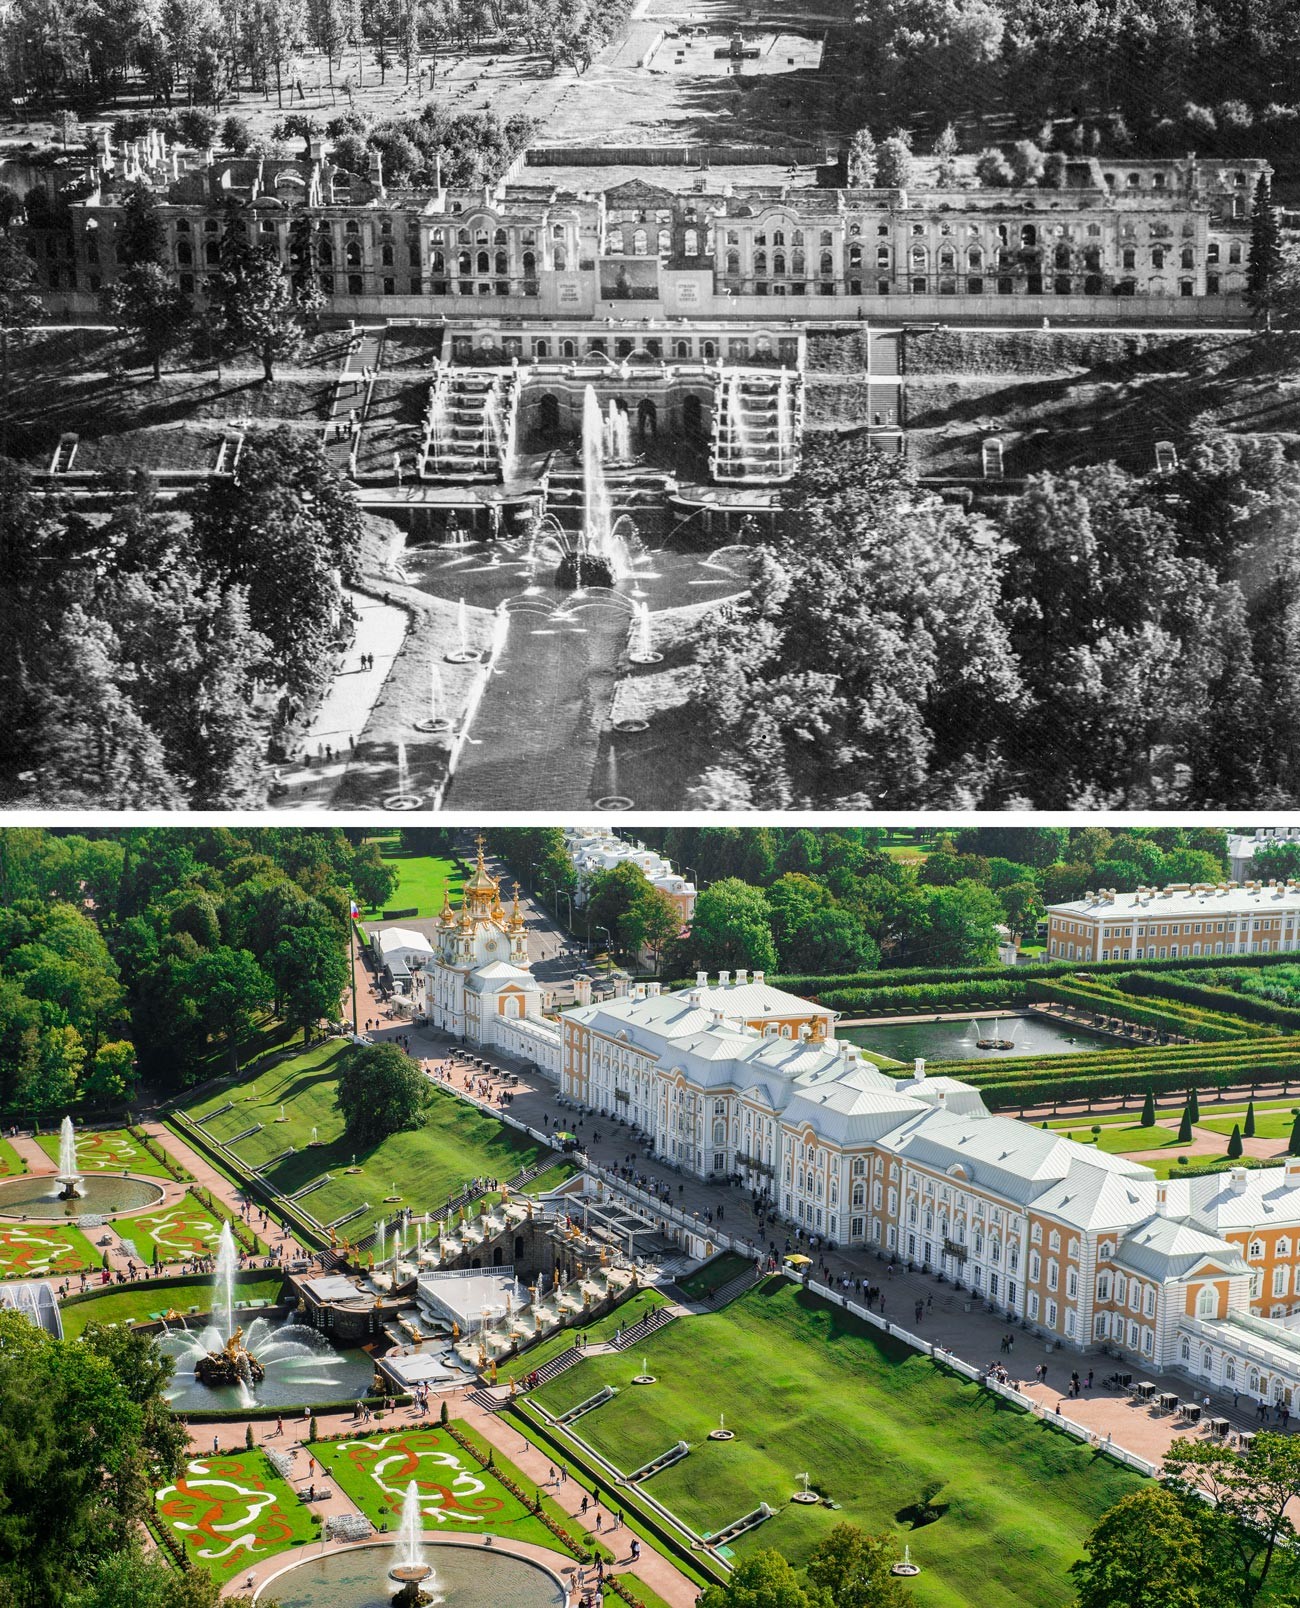 Pemandangan Kebun Atas, Istana Agung, dan air mancur Riam Utama pada 1944 dan sekarang.